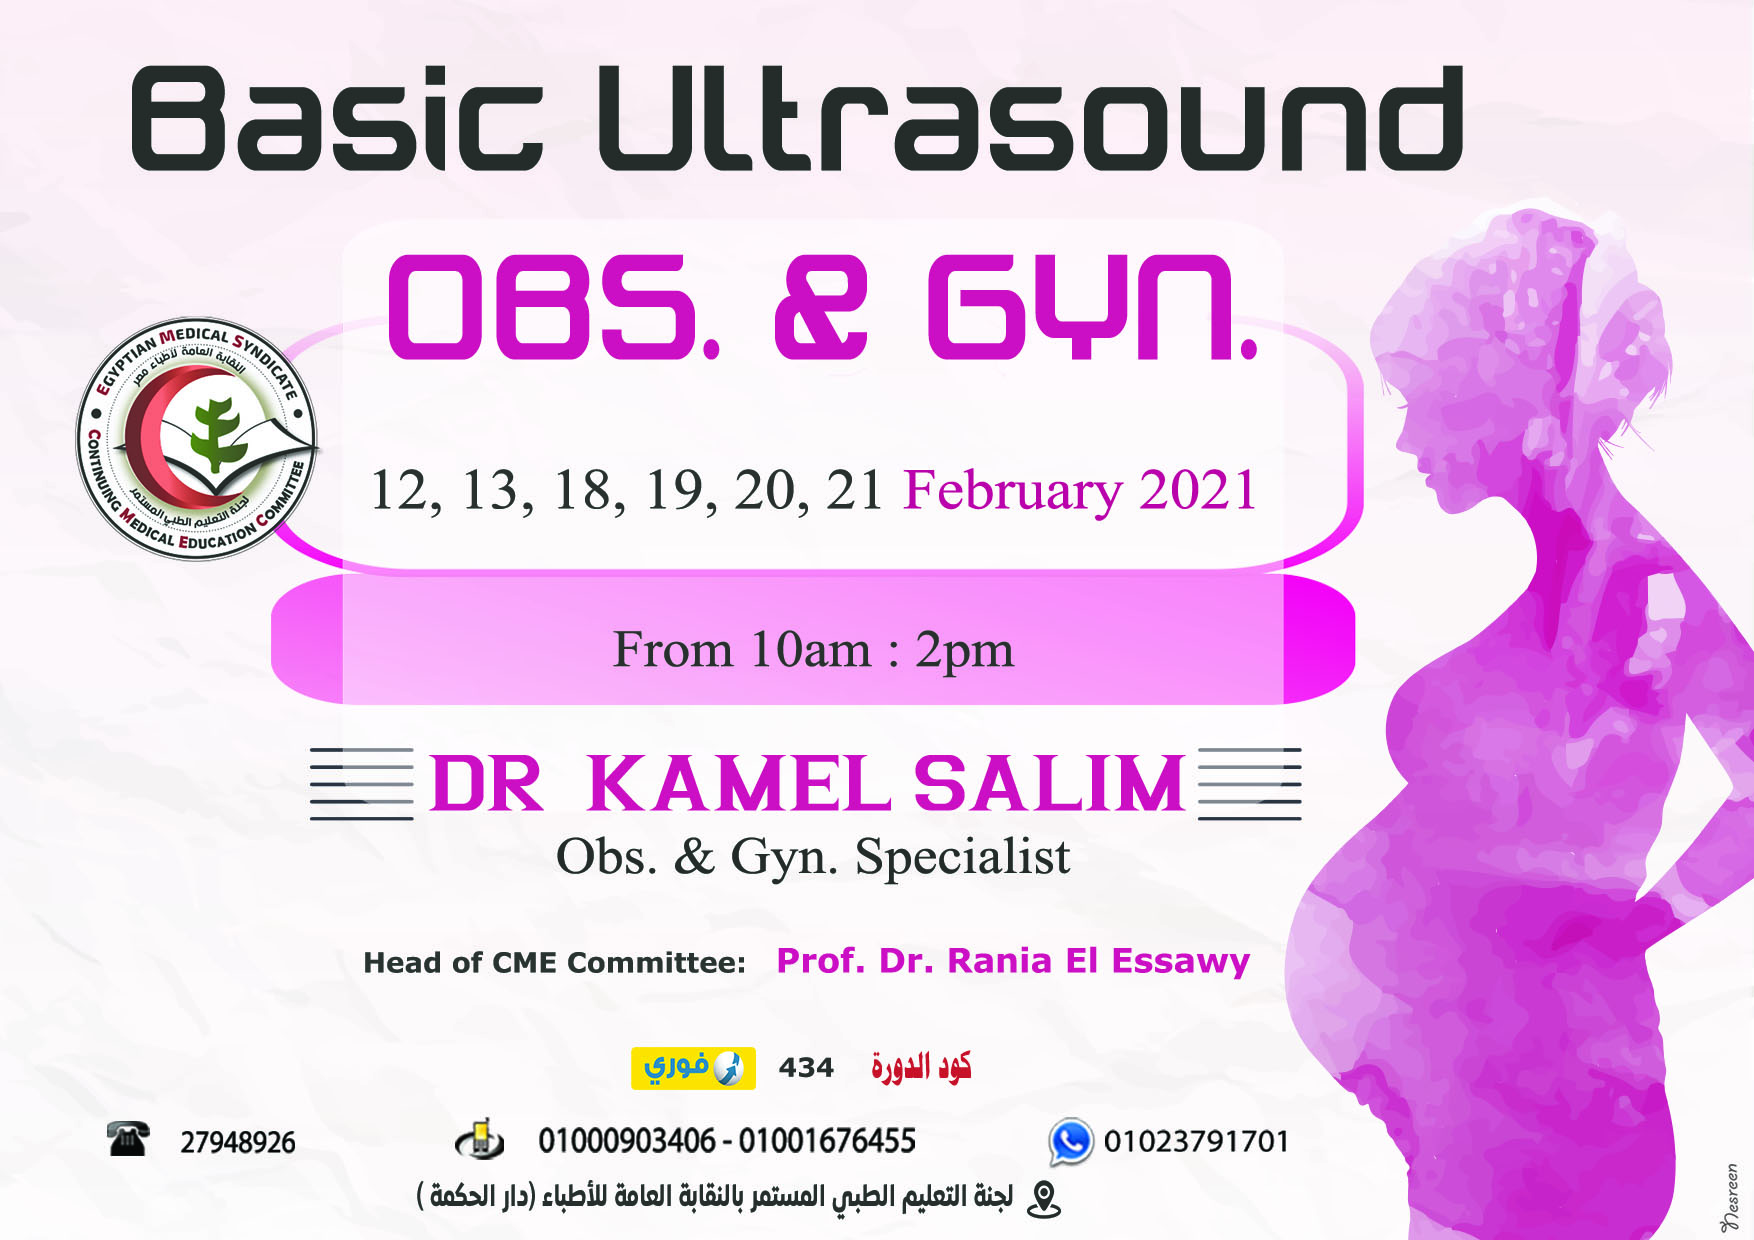 Basic Ultrasound OBS. & GYN.